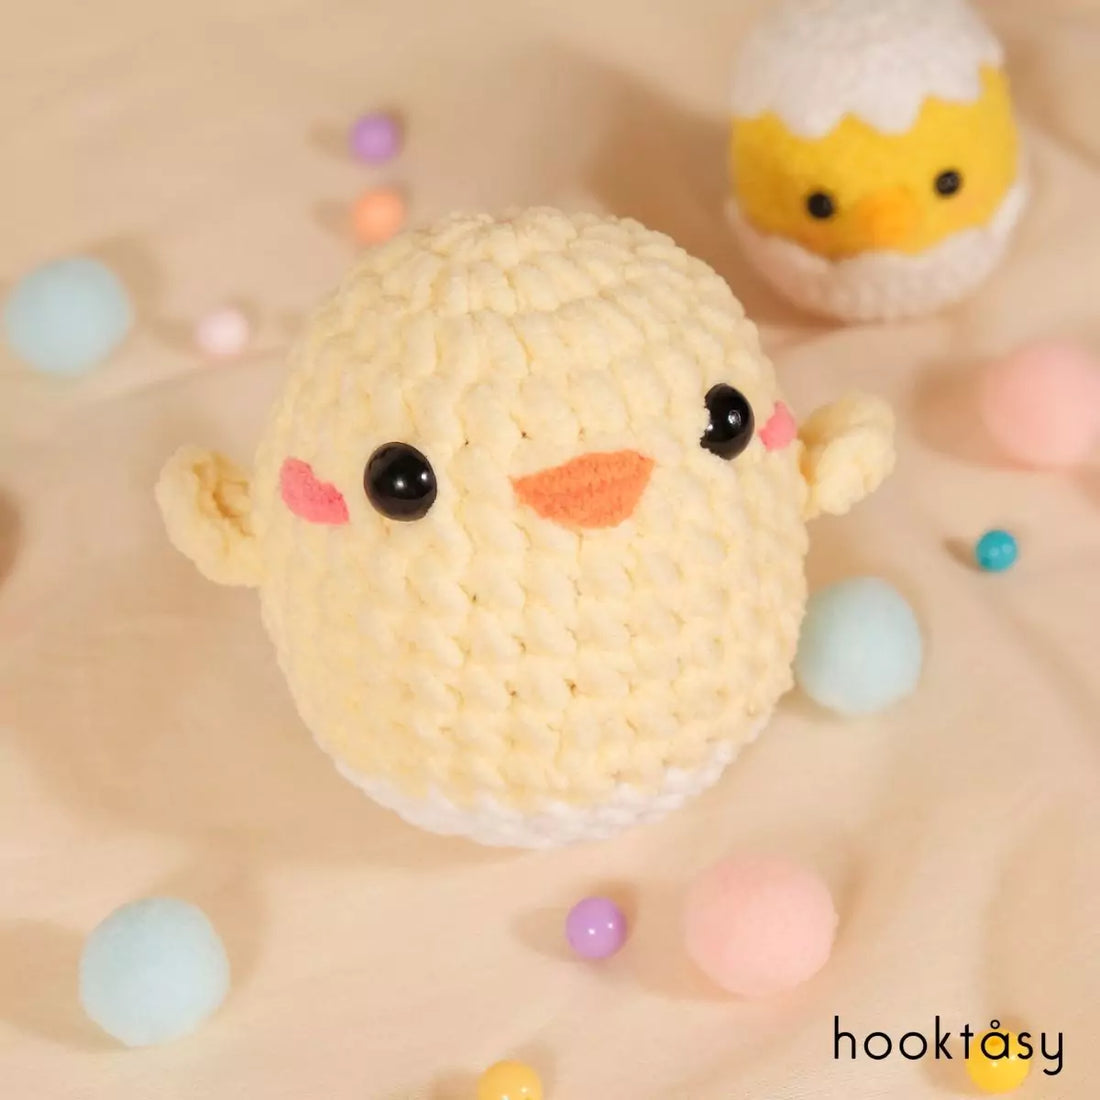 Flippy chick - Hooktasy